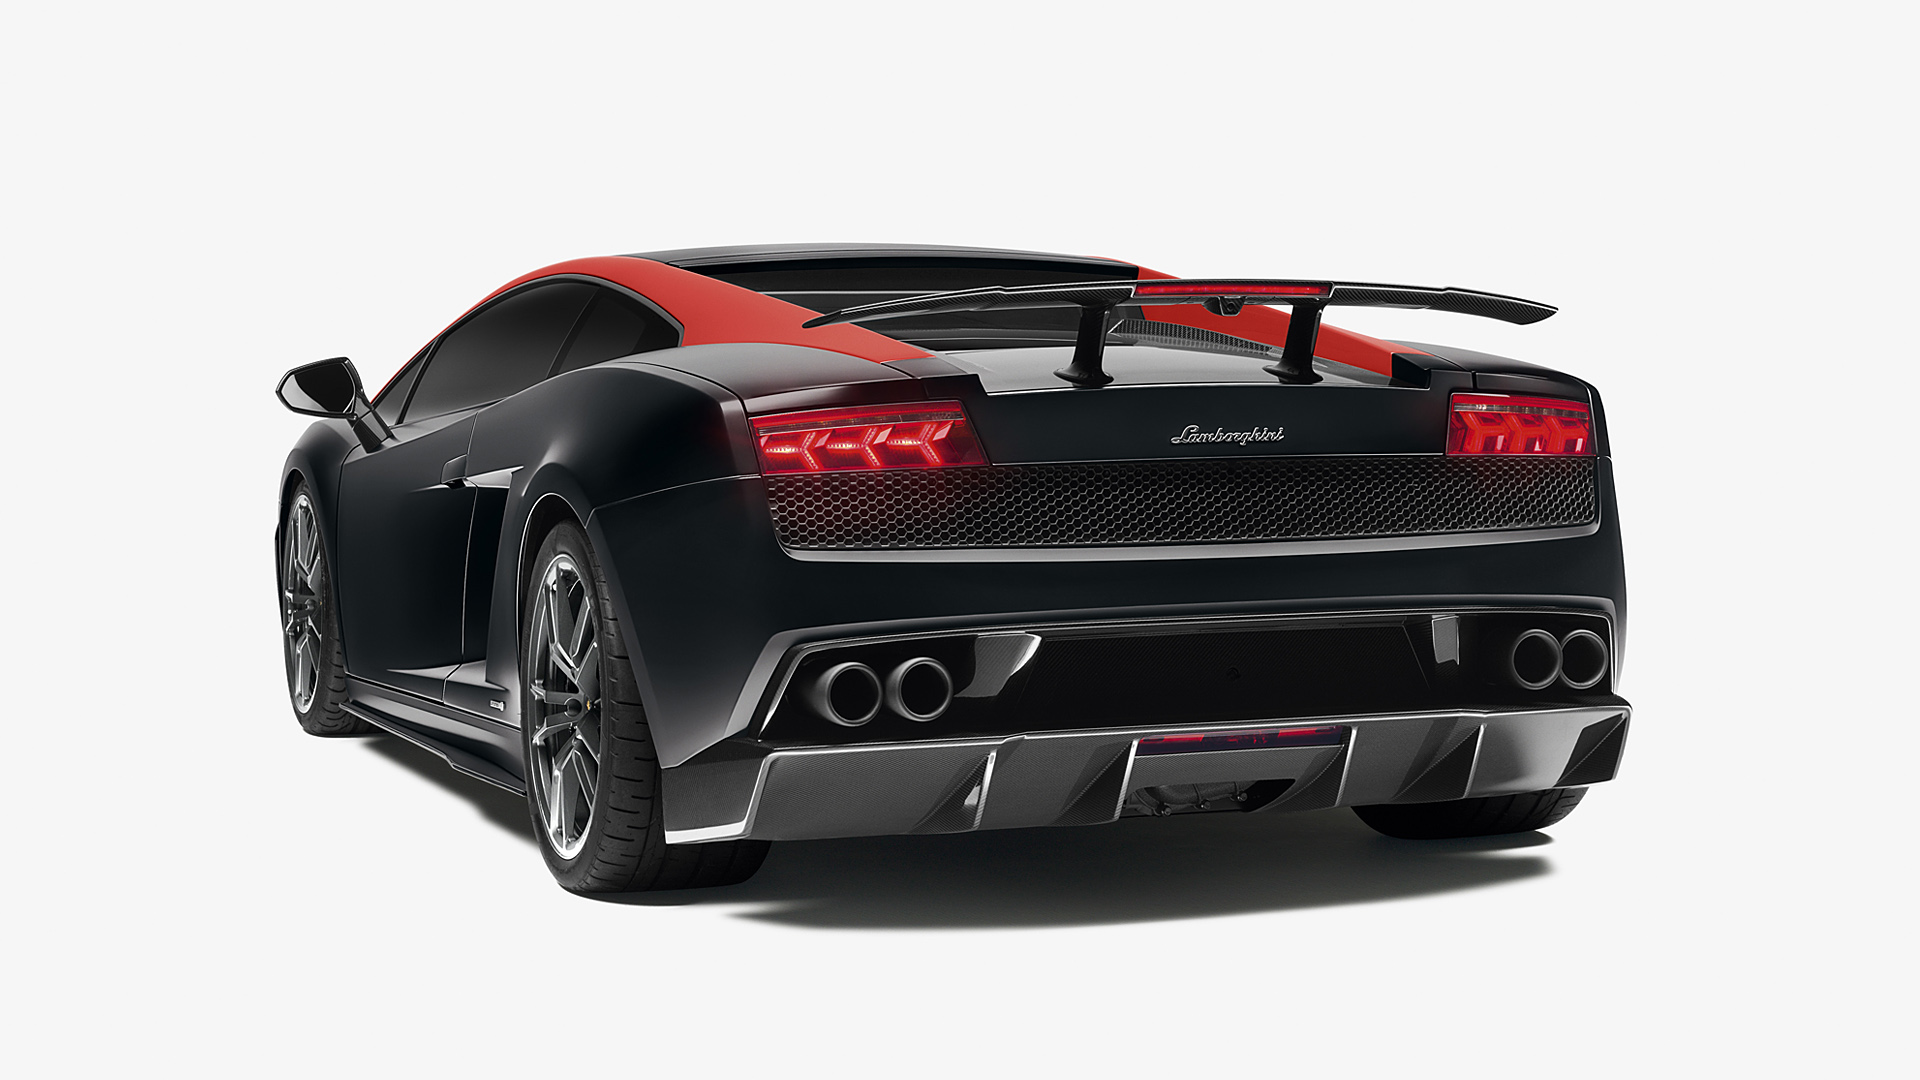  2013 Lamborghini Gallardo LP570-4 Edizione Tecnica Wallpaper.